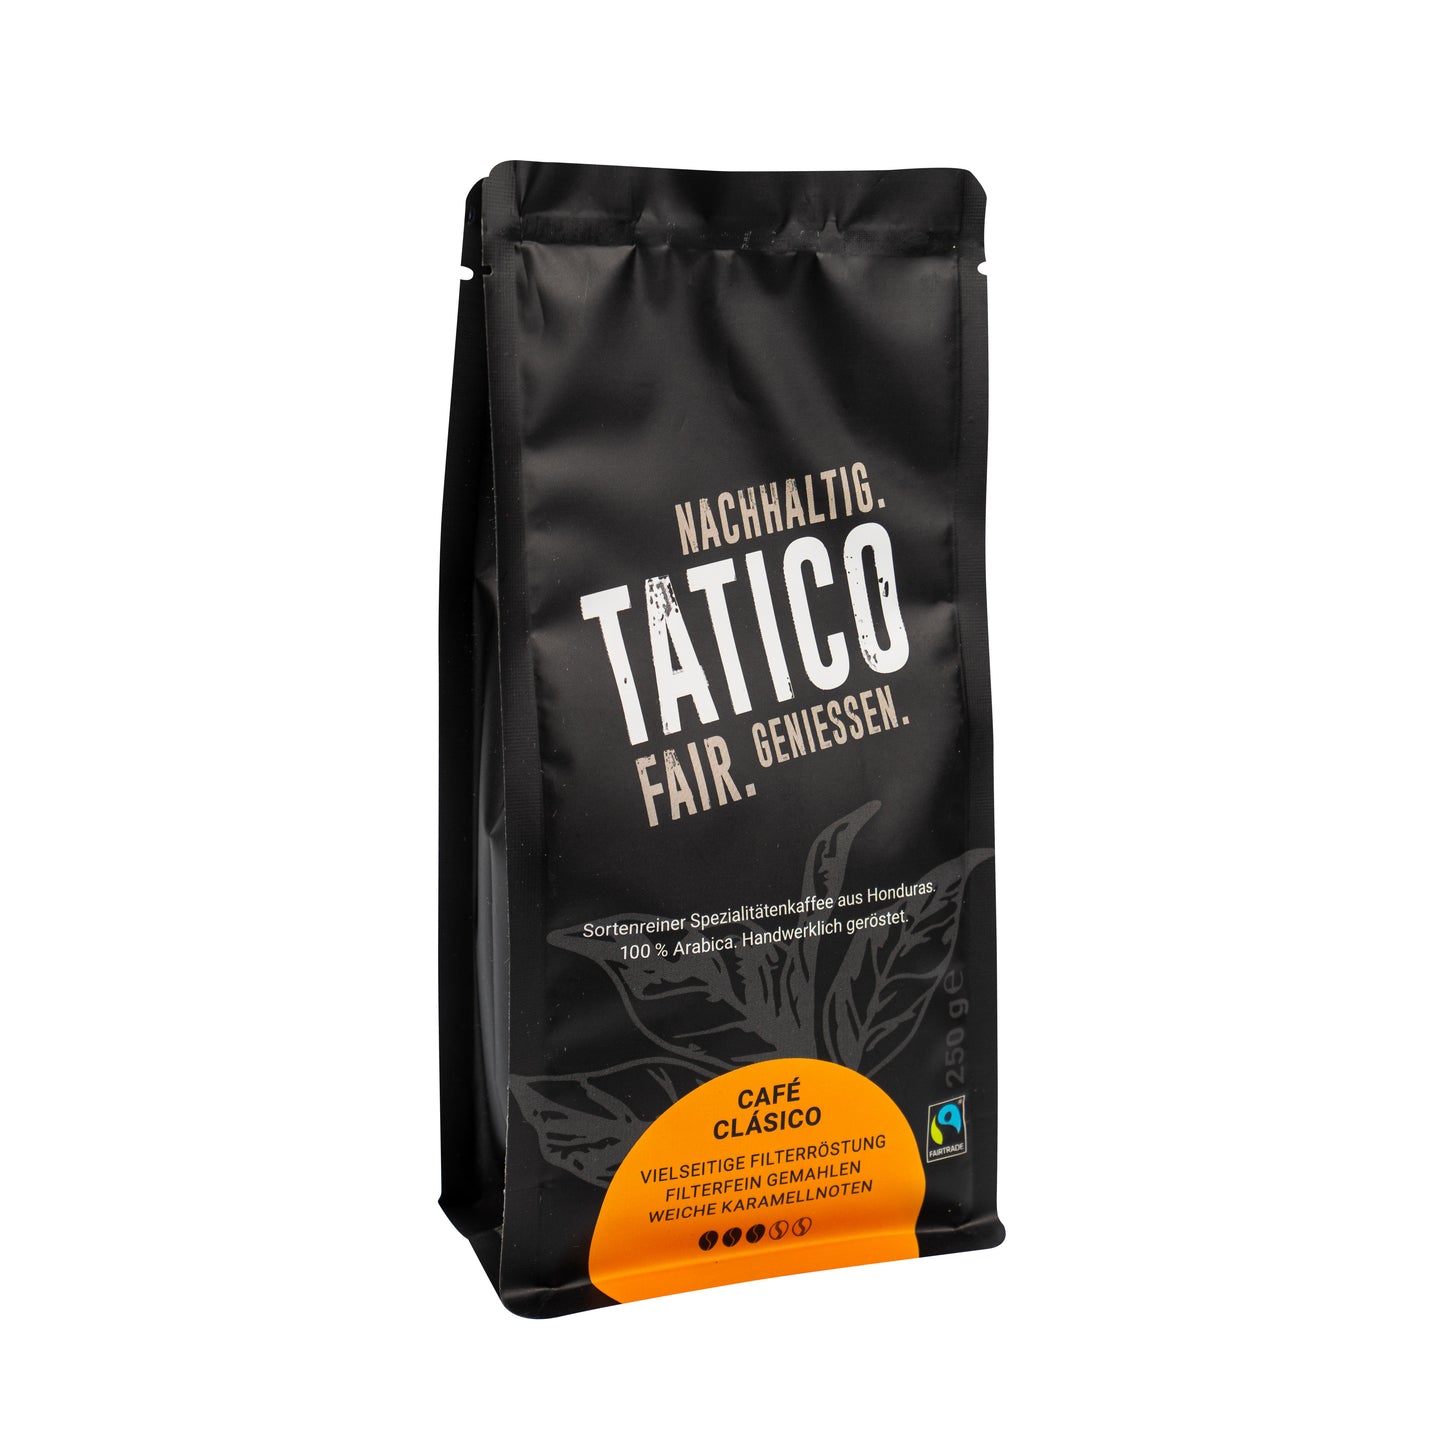 Tatico Café Clásico - Filterfein gemahlen